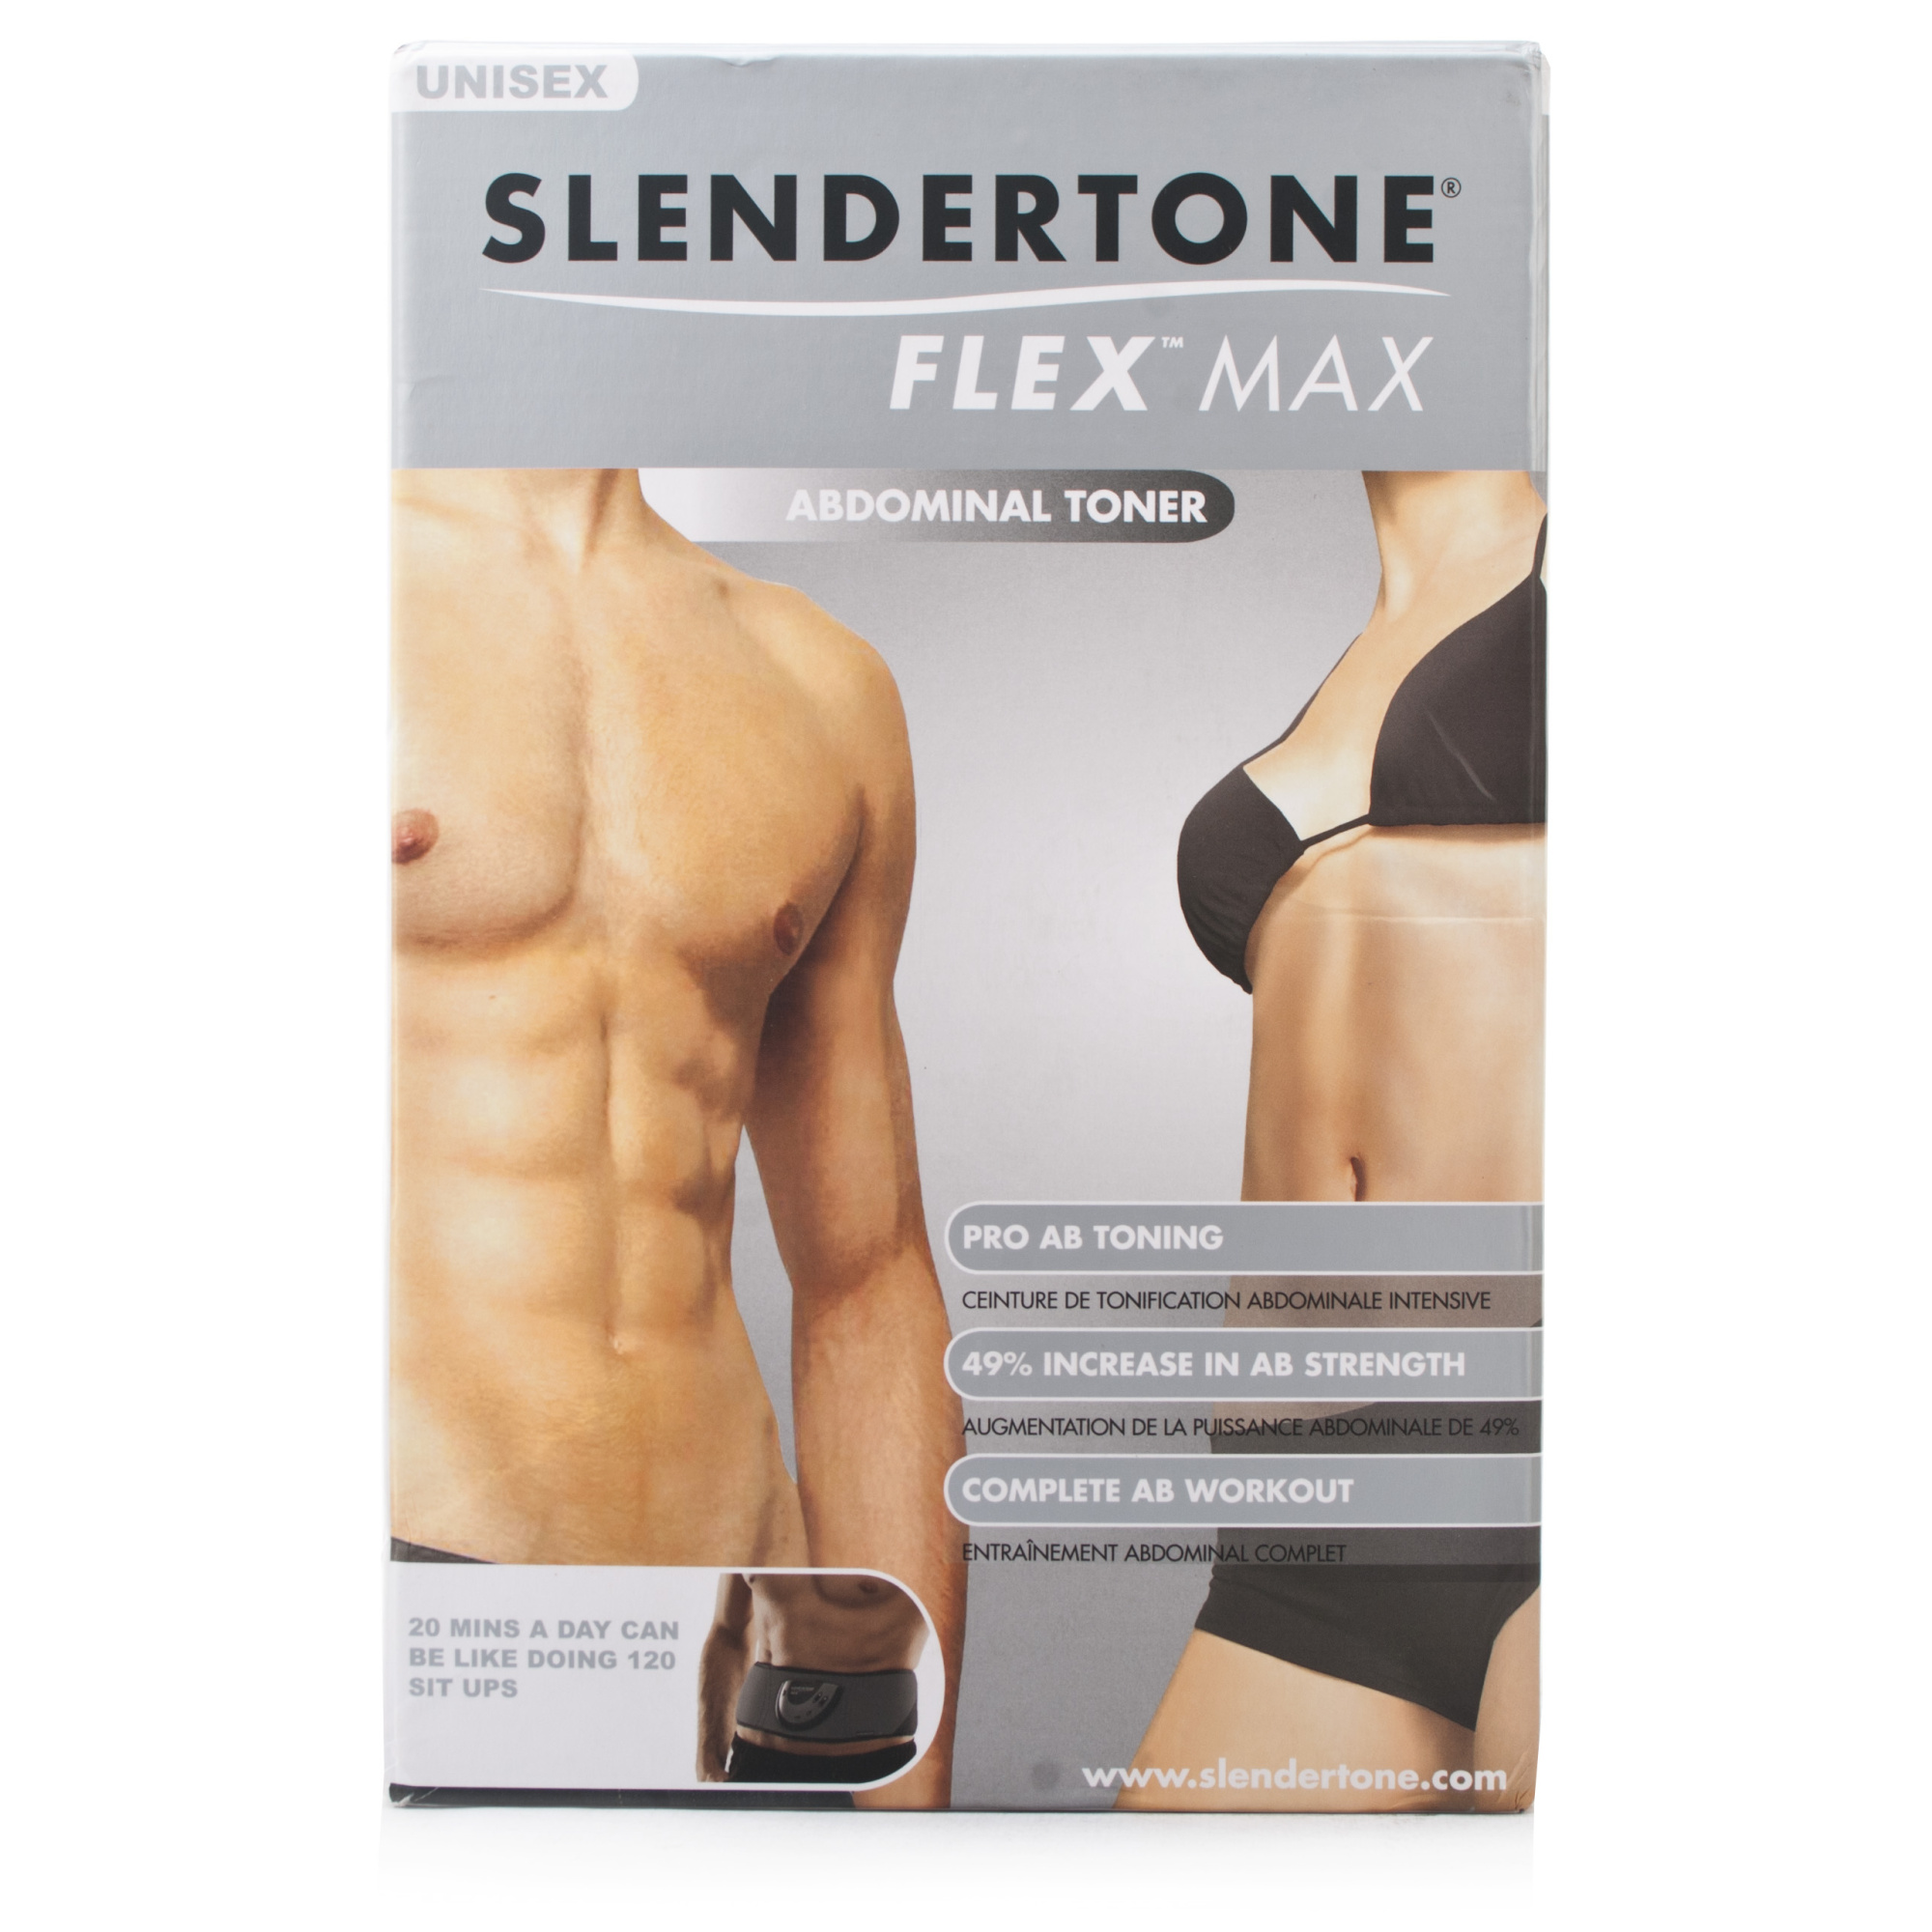 Slendertone Flex Max Unisex Abs Toner